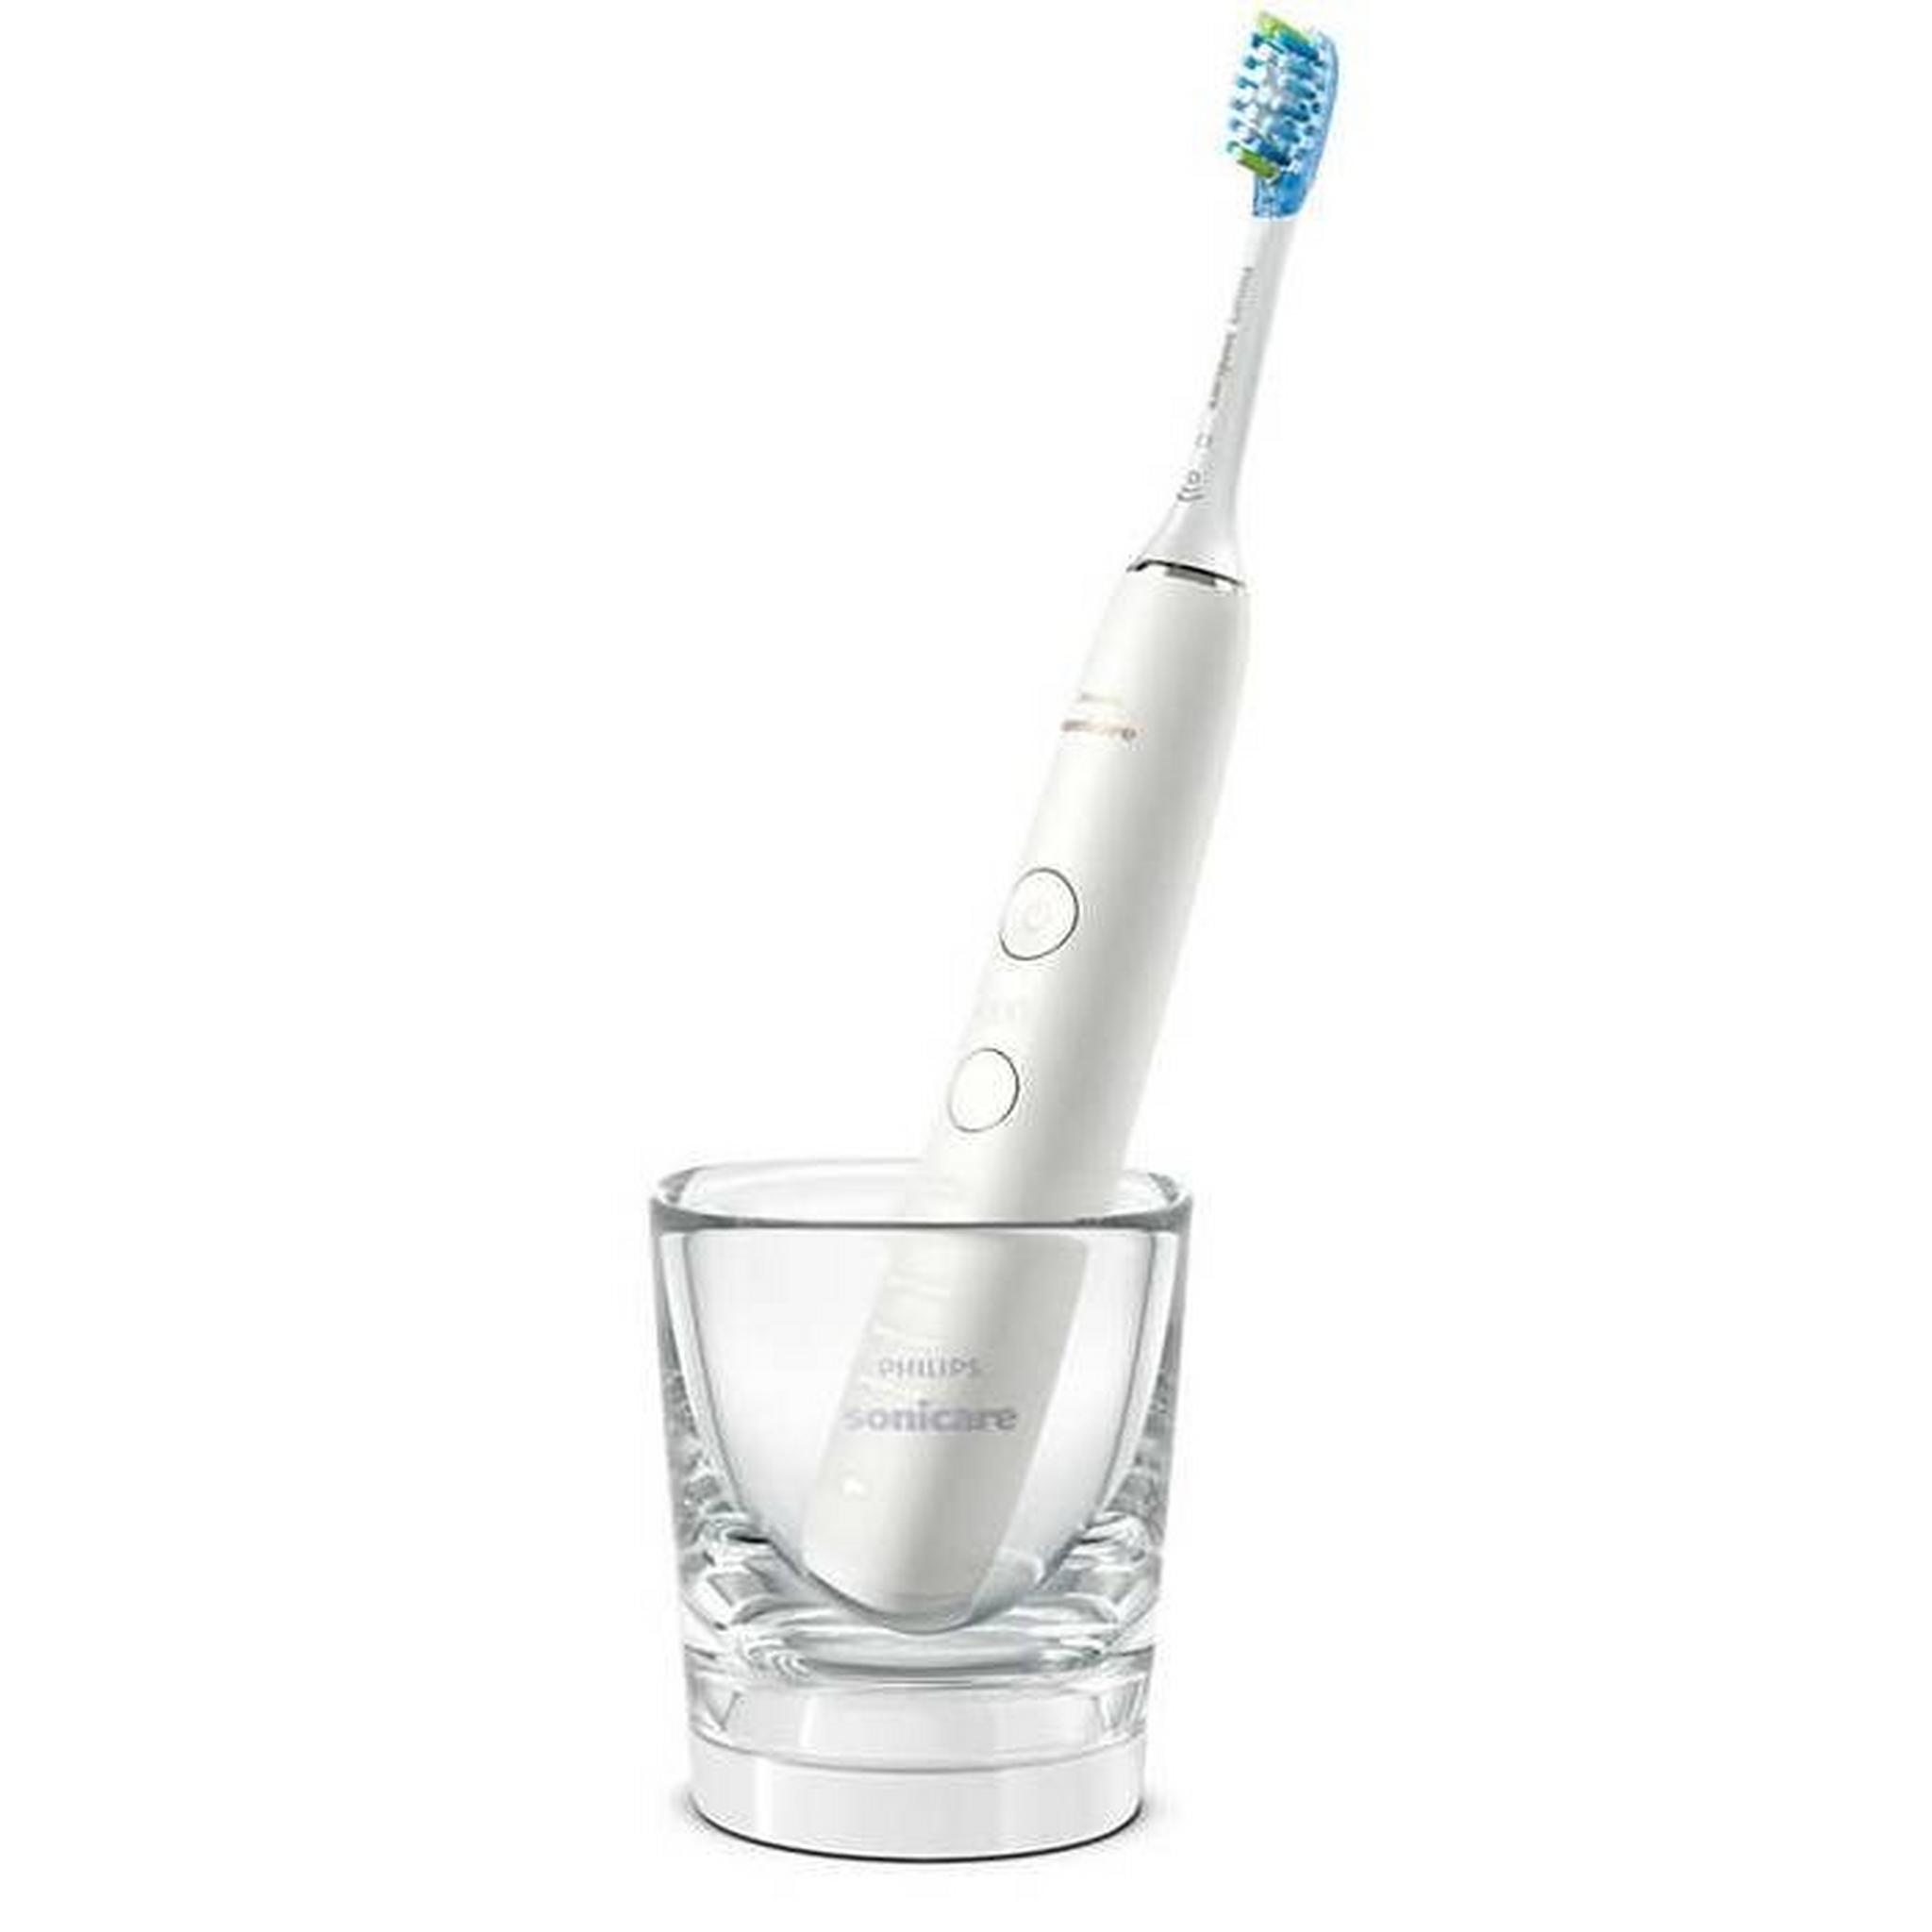 Philips Sonicare Diamond Clean 9000 Toothbrush, HX9913/17 – White